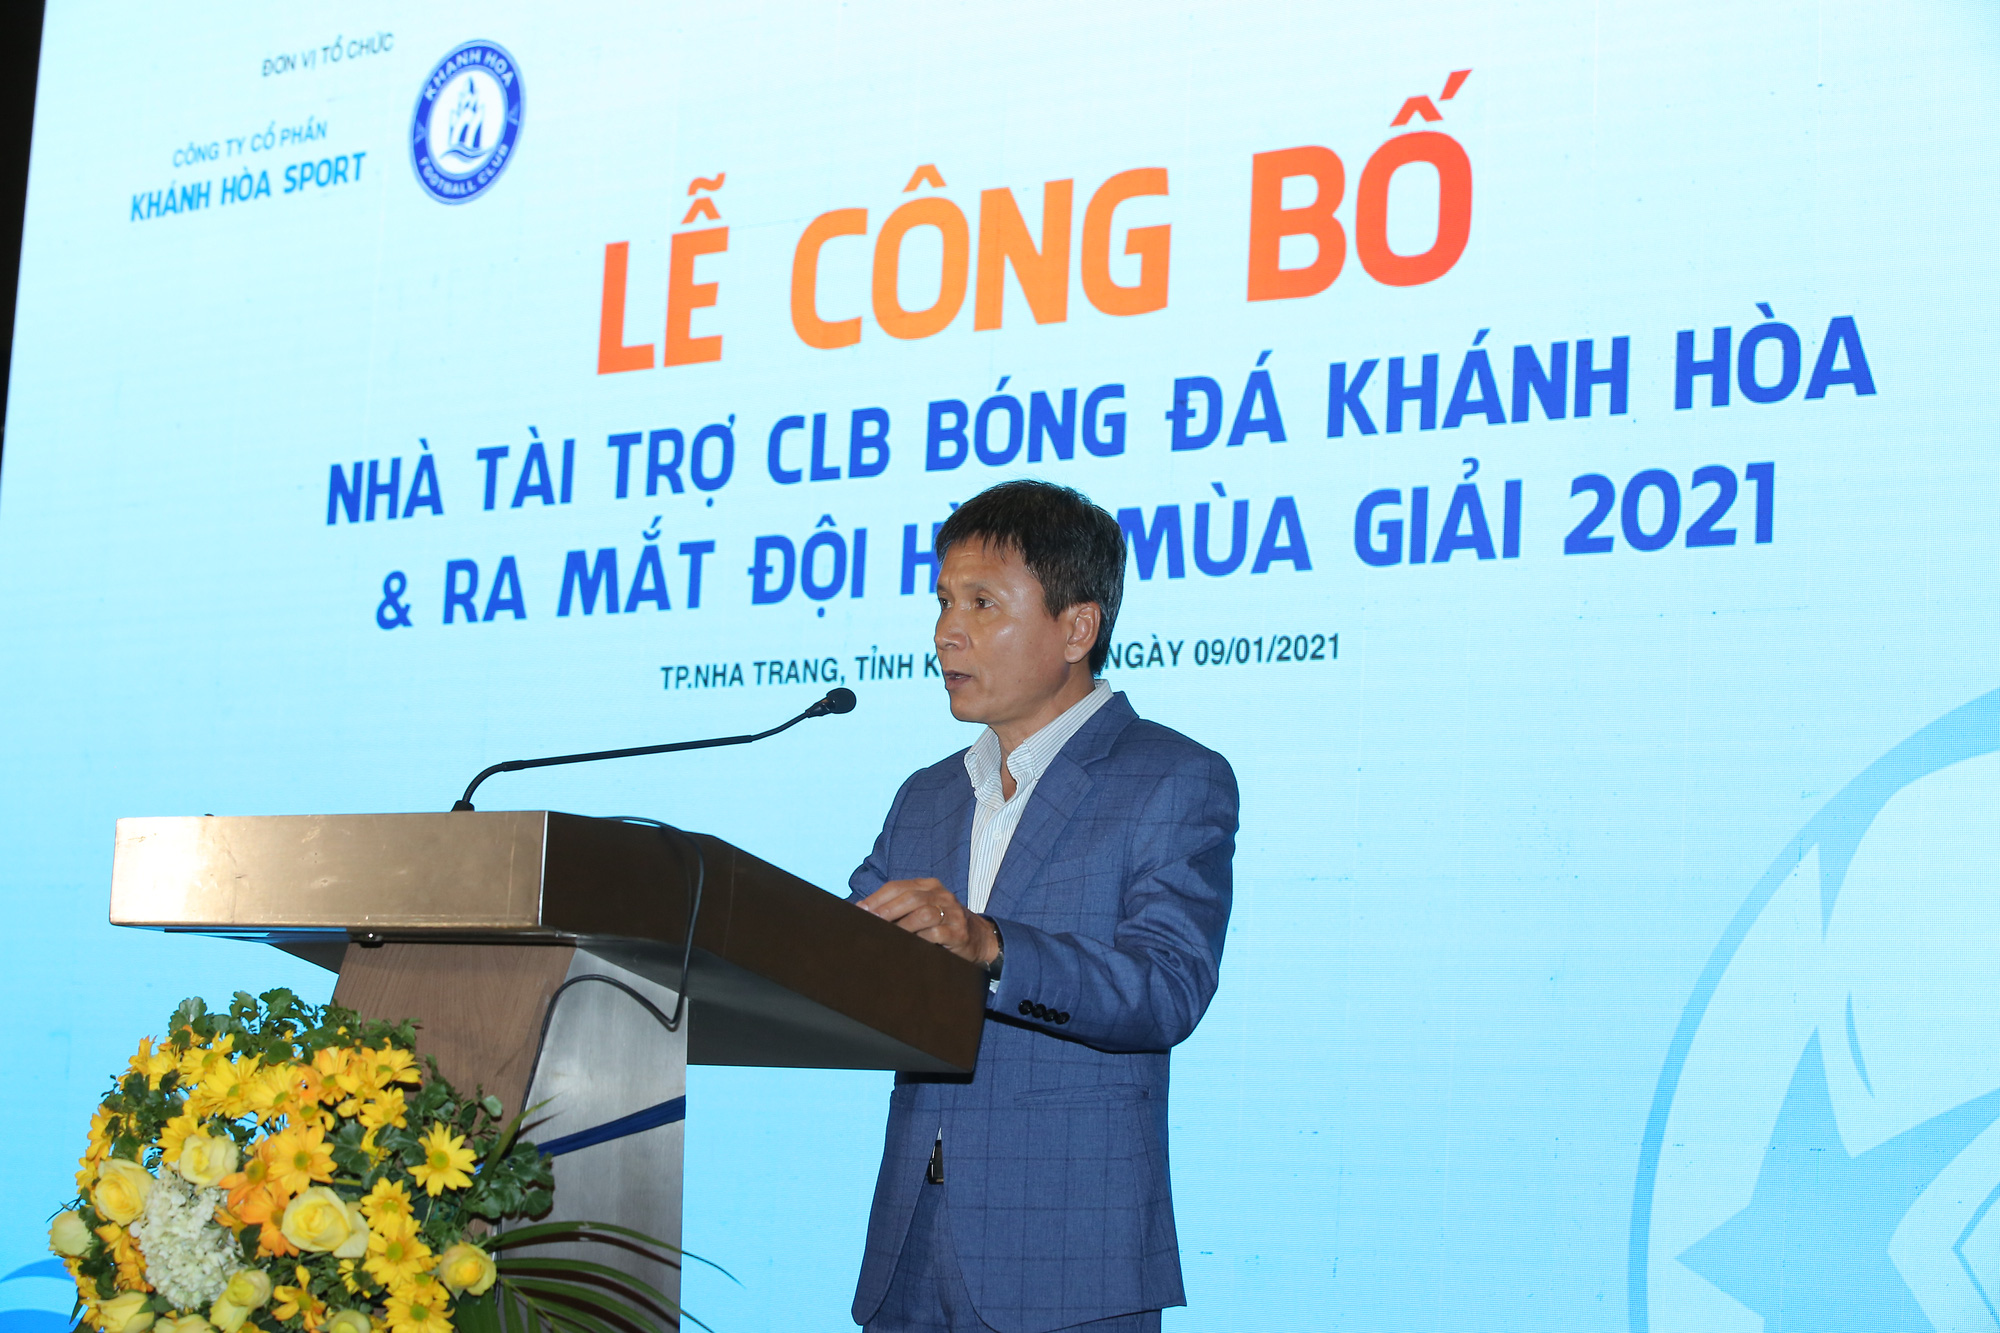 CLB Khánh Hòa nhận tài trợ 20 tỉ đồng trong ngày xuất quân - Ảnh 2.